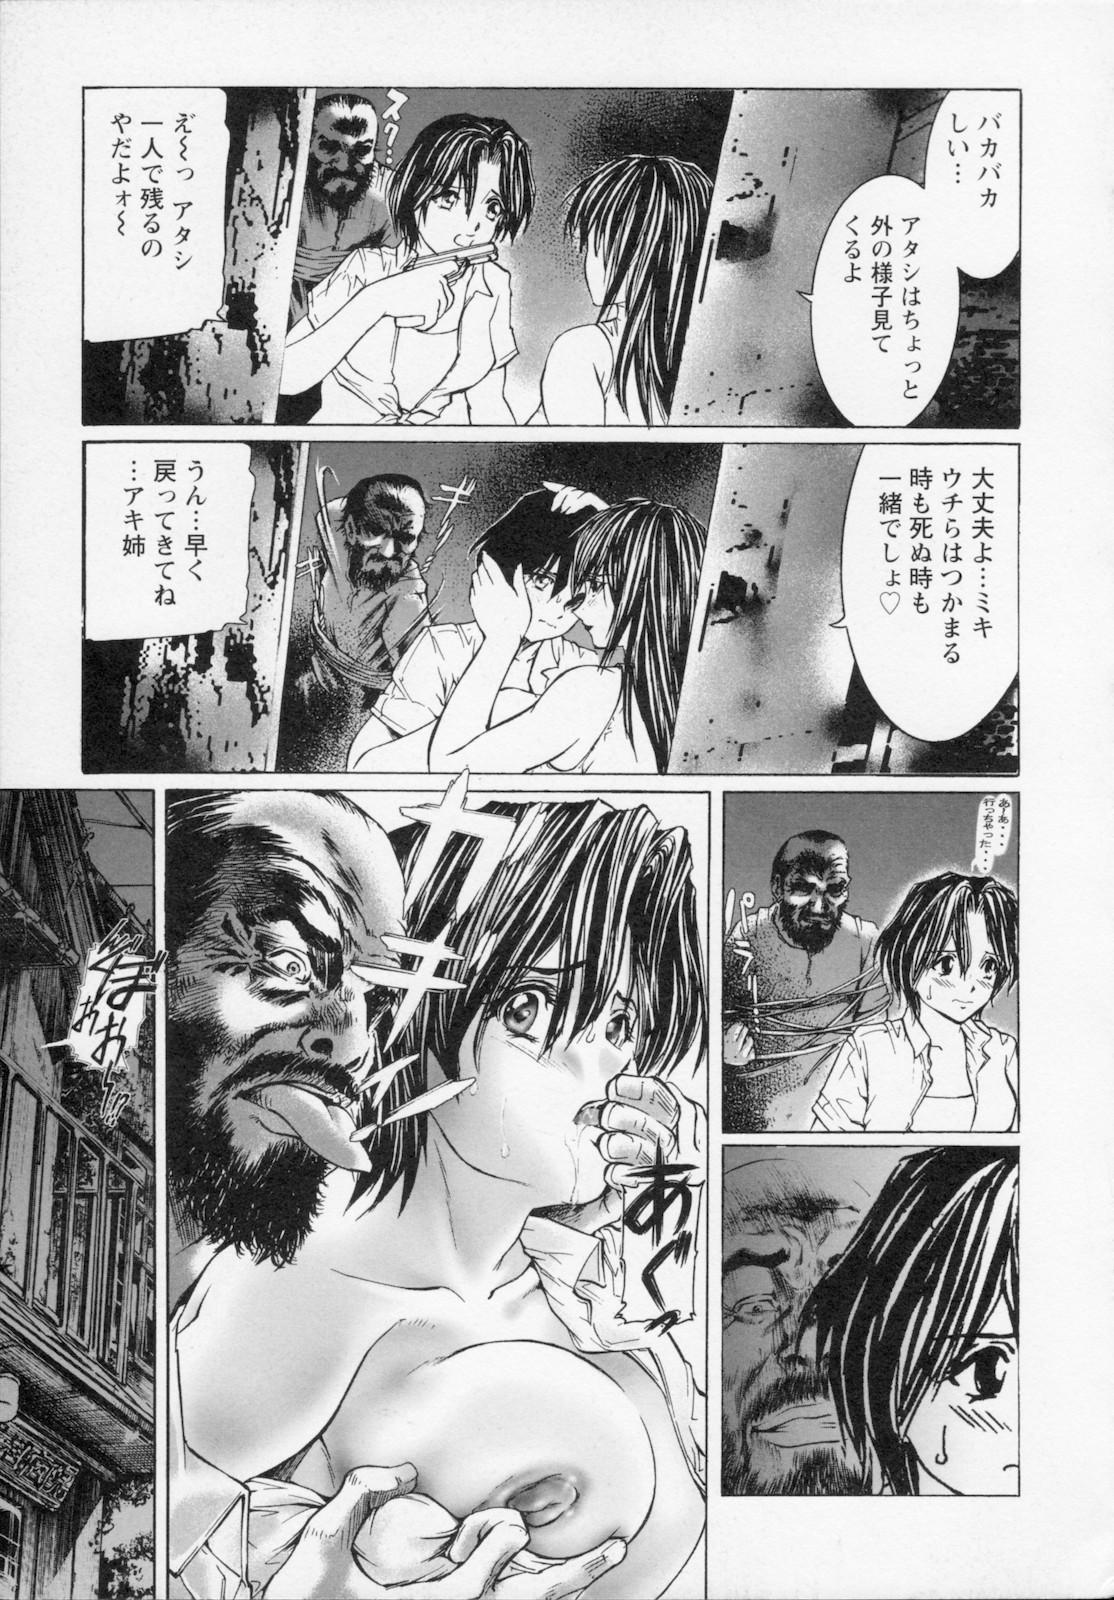 Watashi wa ryoujyoku daisuki na henatai mangaka desu 28